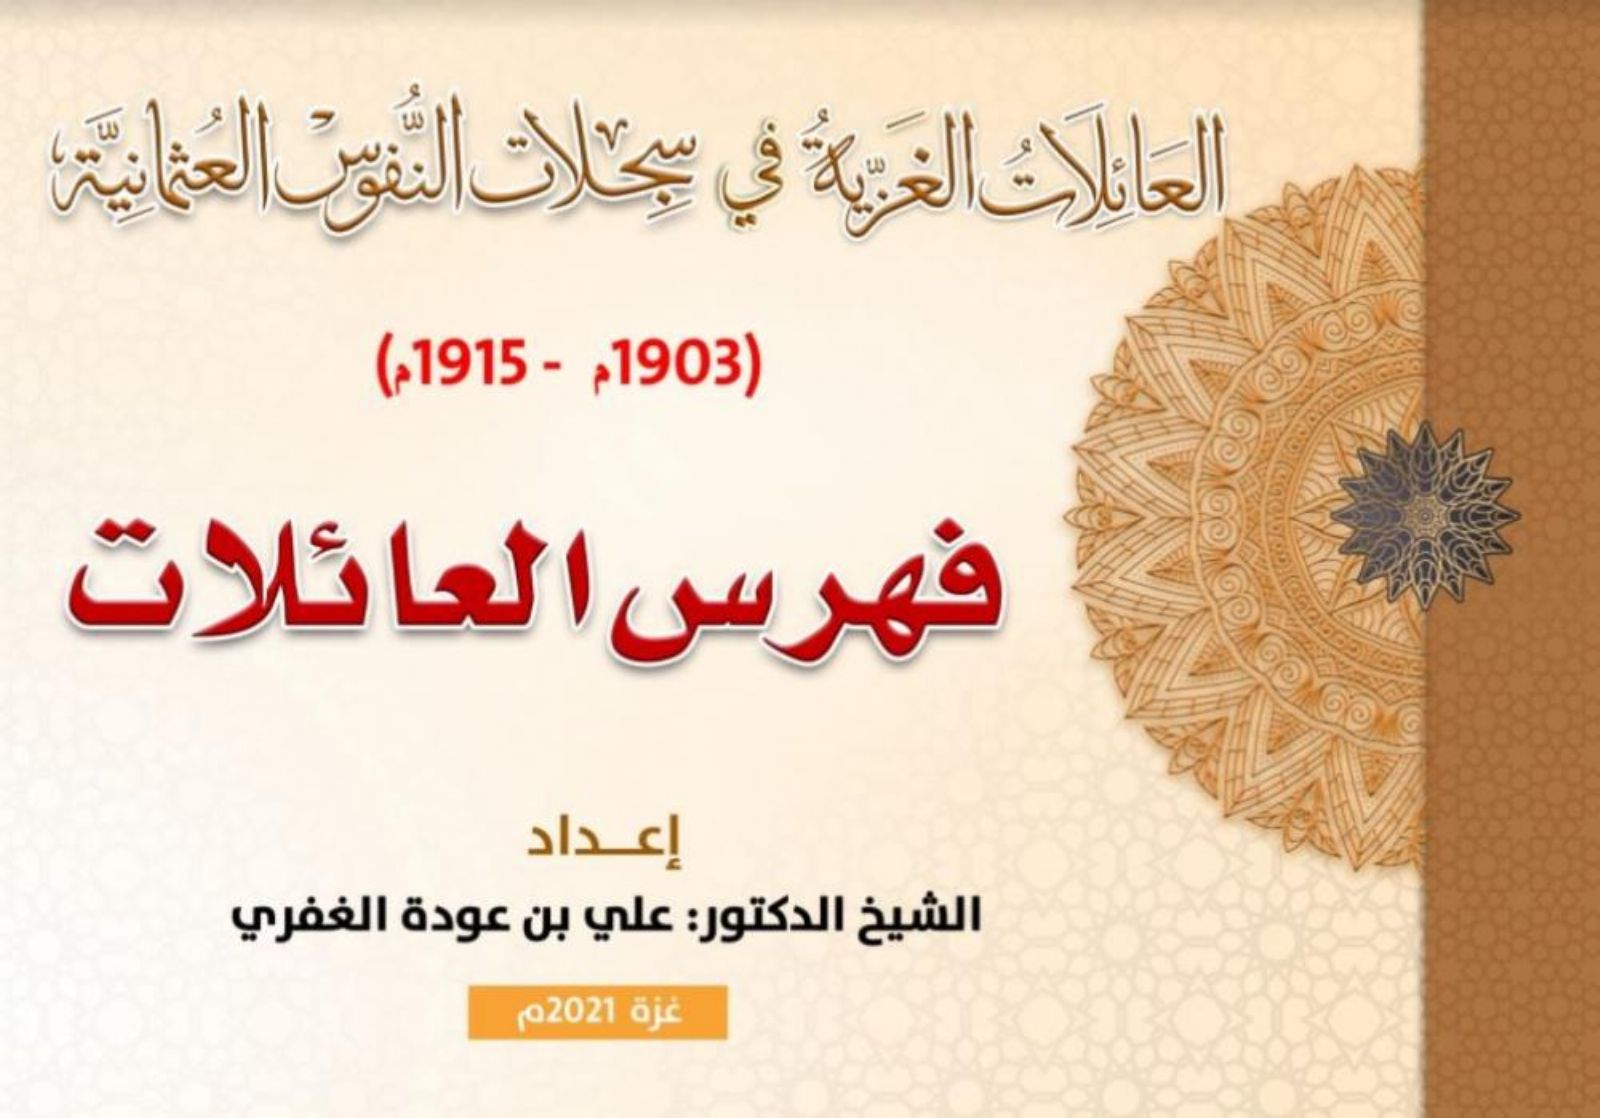 بالأسماء: أول موسوعة "للعائلات الغزية" في السجلات العثمانية